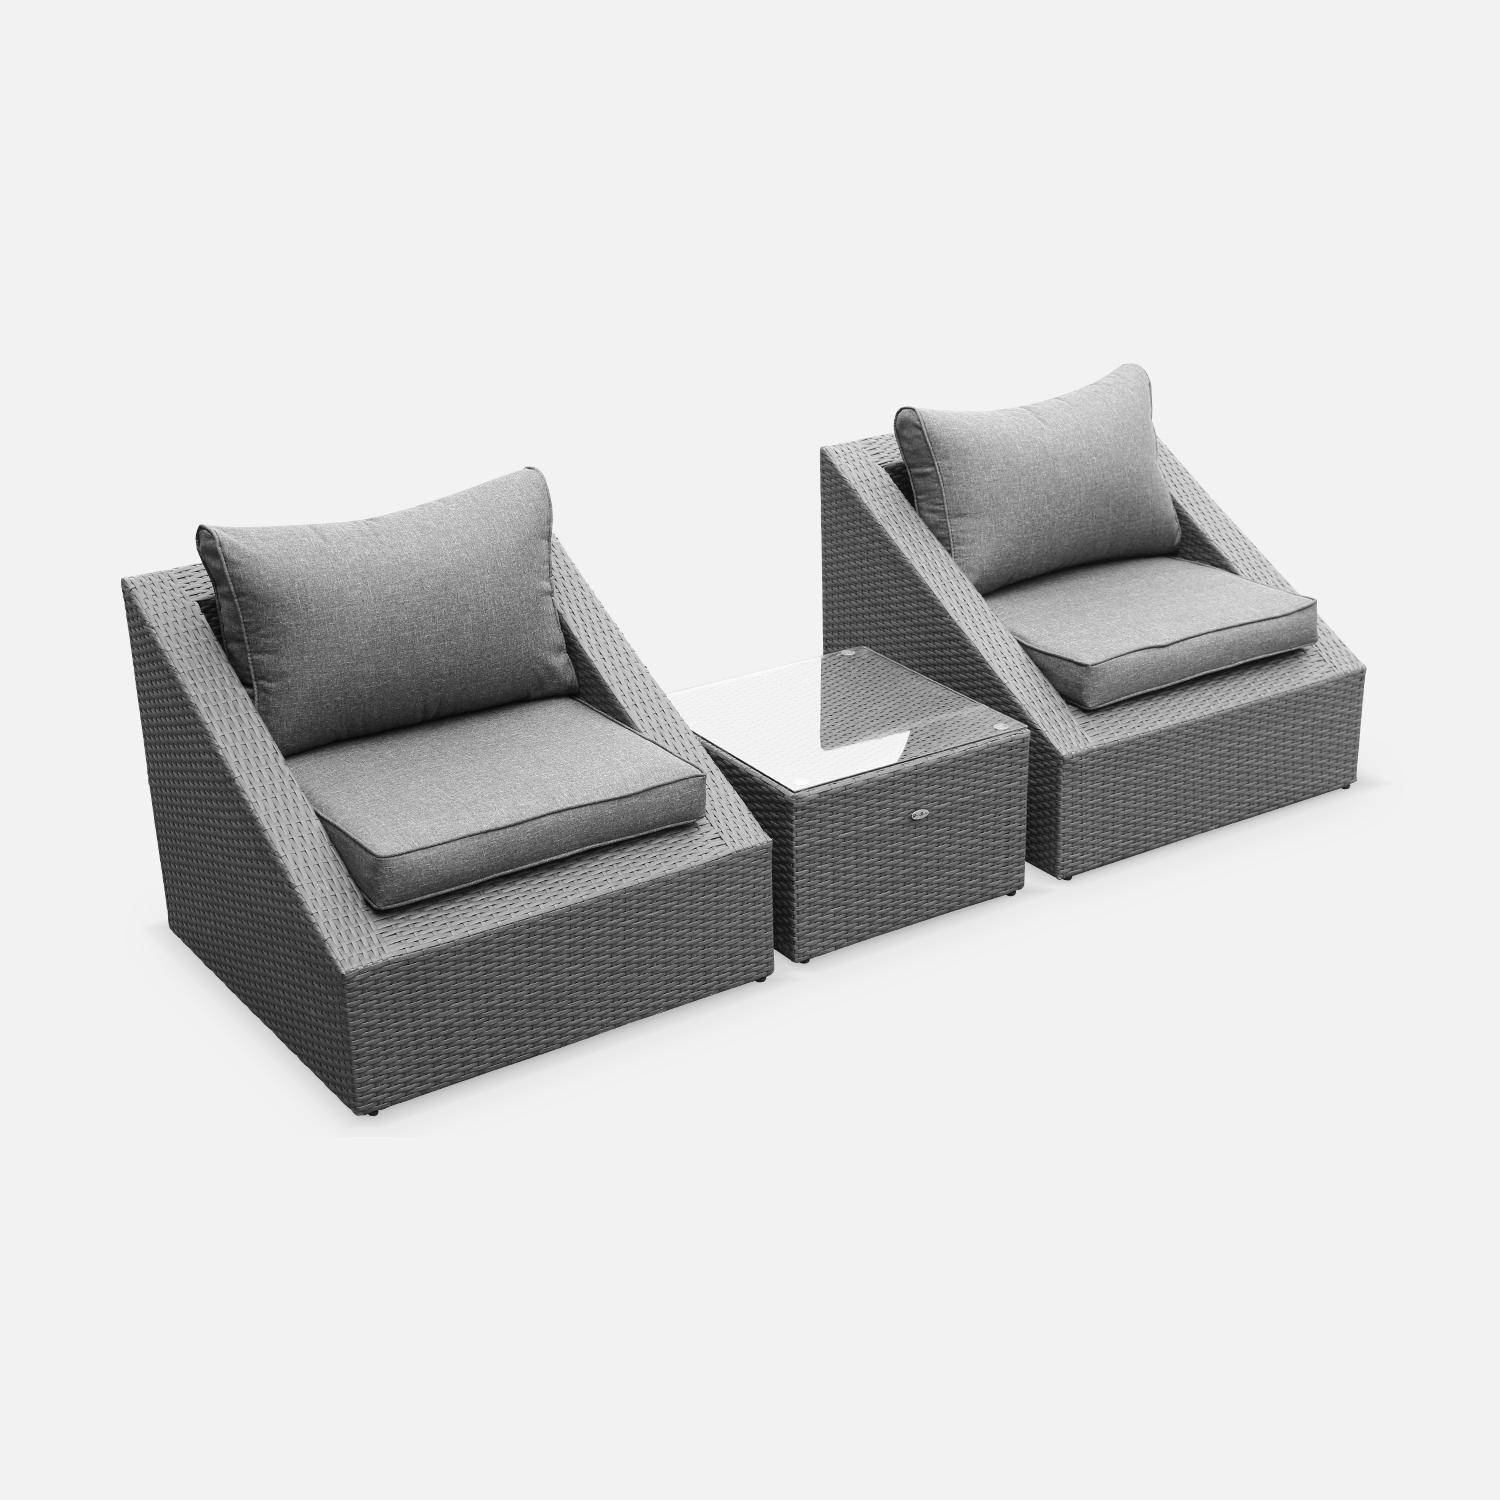 Sitzgarnitur für den Garten 2 Sitze - Triangolo - graues Kunststoffrattan, graue Kissen, Stühle + 1 Couchtisch, stapelbar Photo2